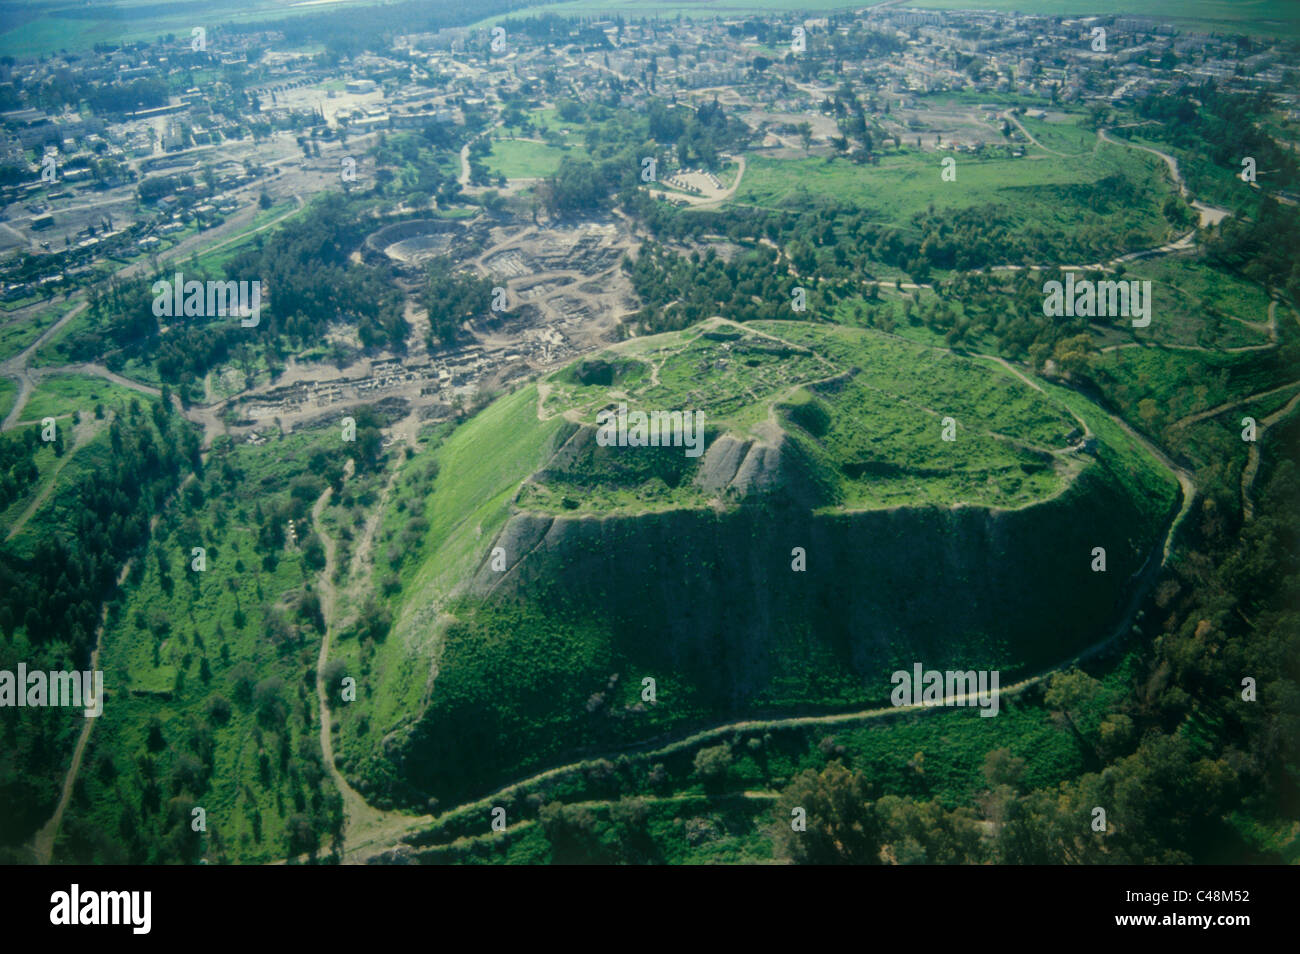 Photographie aérienne des ruines de la ville romaine de Beit Shean dans la vallée du Jourdain Banque D'Images